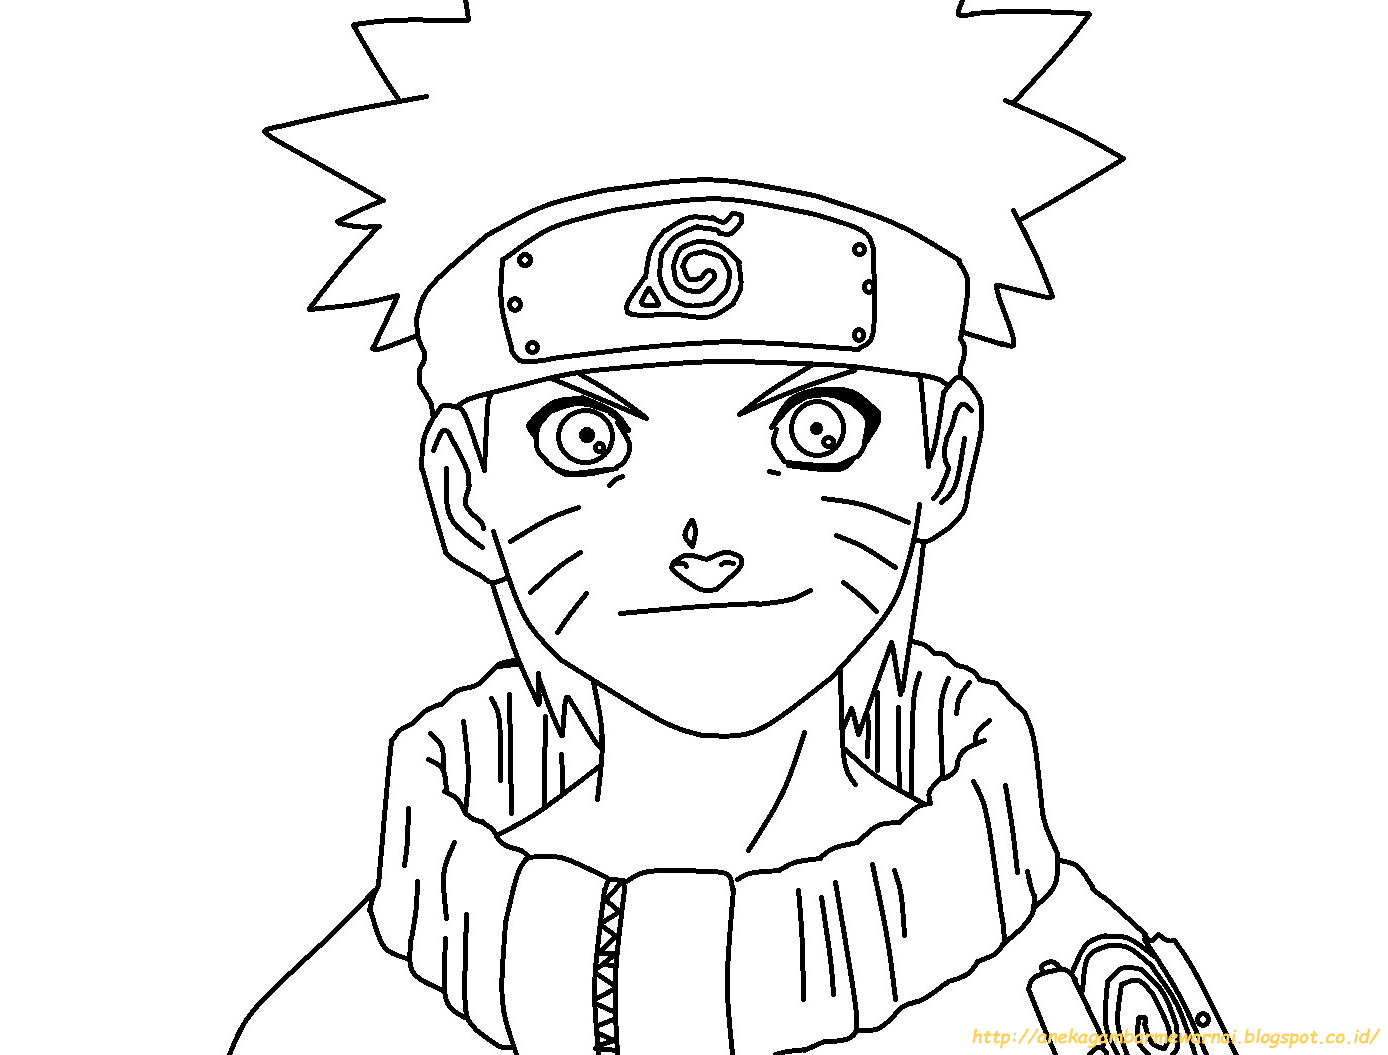 Gambar Ilustrasi Kartun Naruto Hitam Putih Hilustrasi